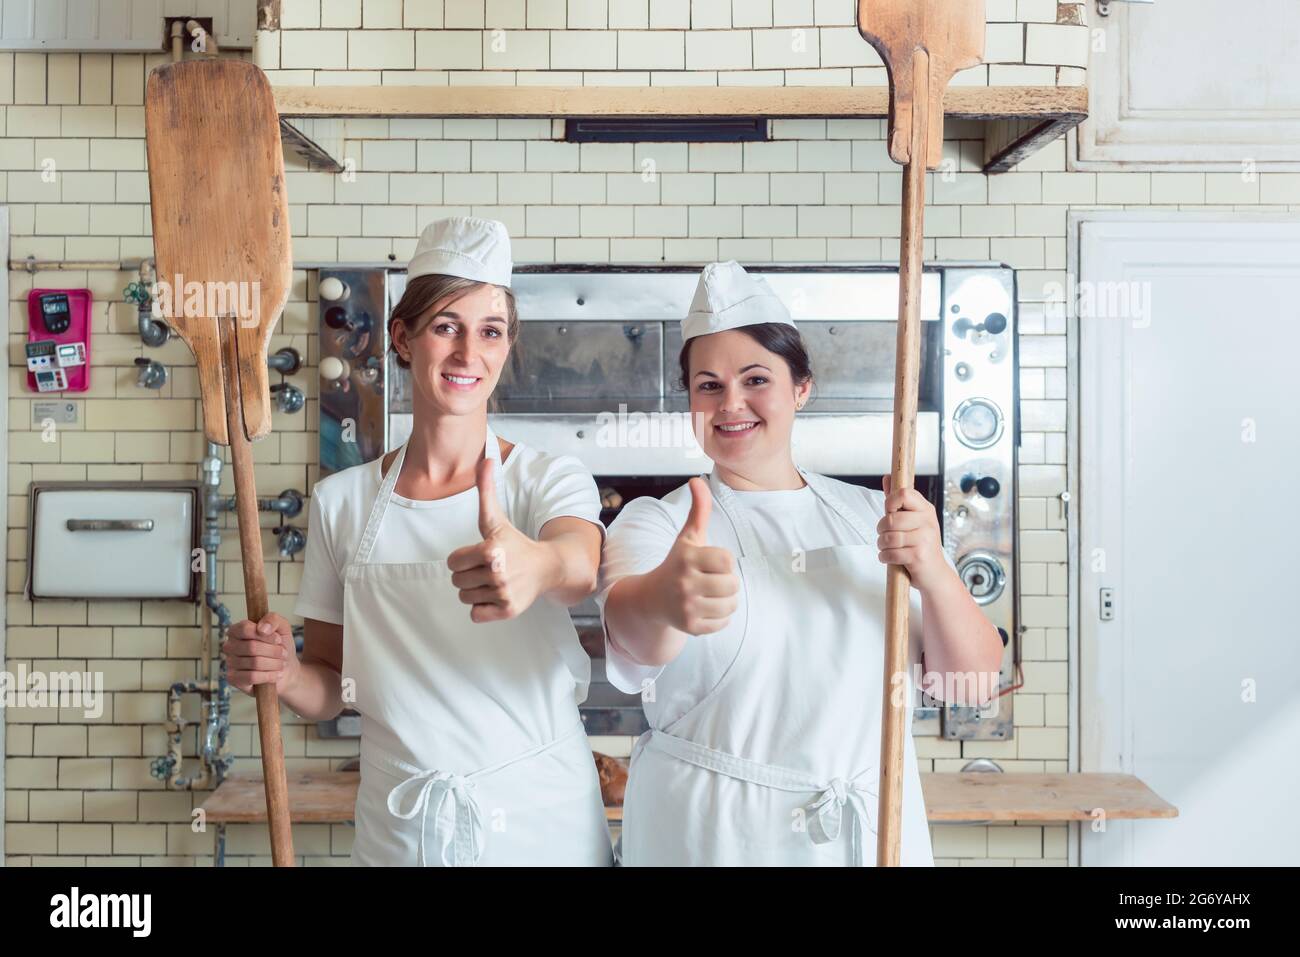 Une équipe de boulangeuses se tenant fièrement dans la boulangerie, se portant les pouces Banque D'Images